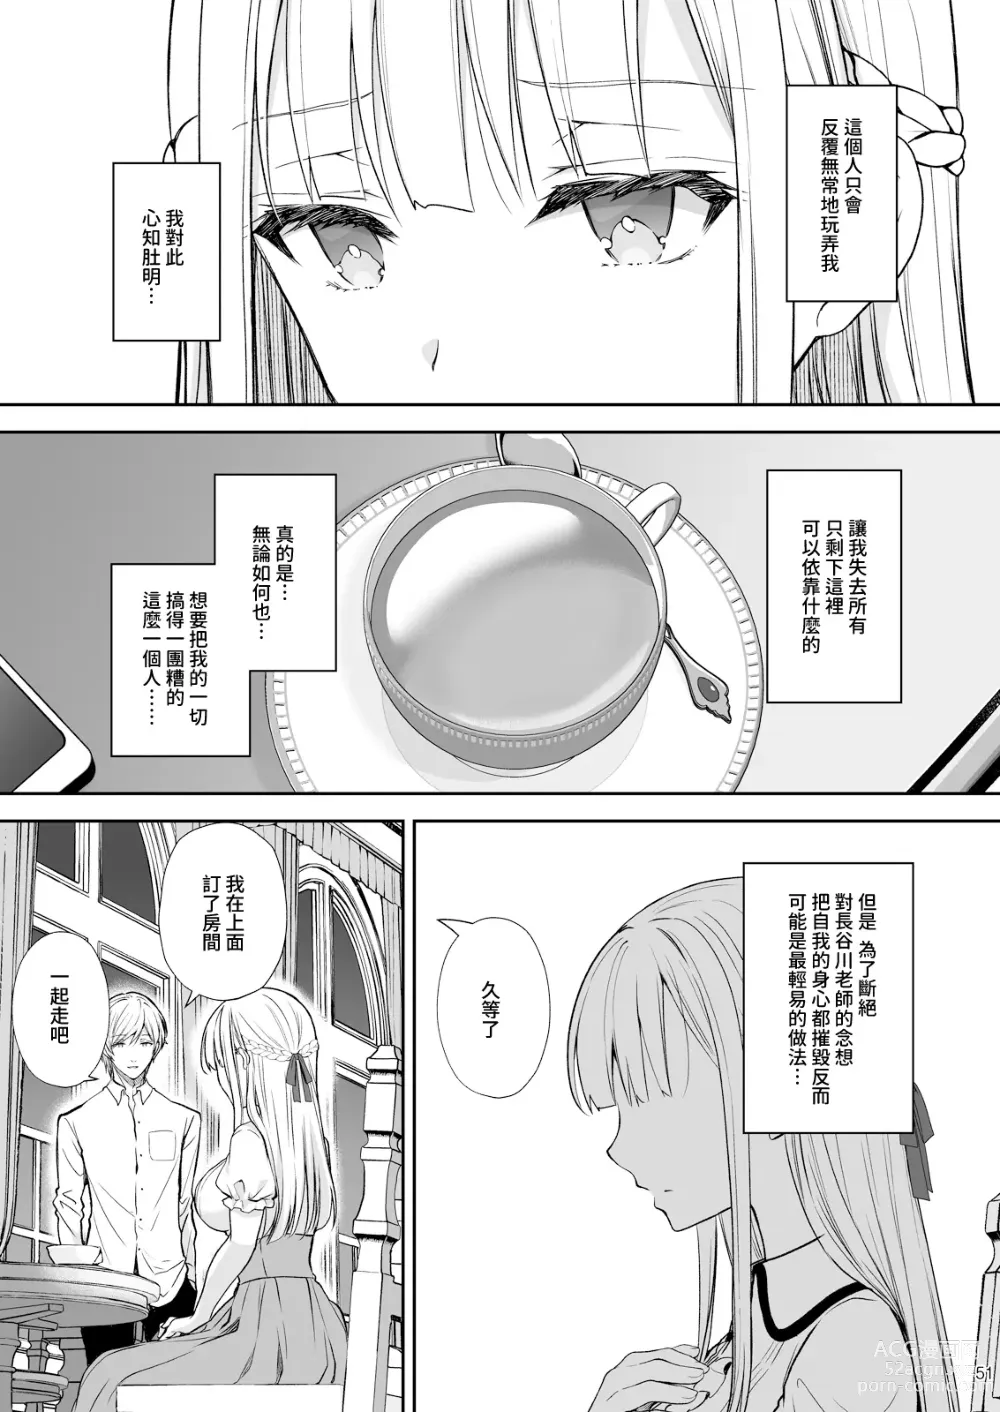 Page 341 of doujinshi 淫溺の令嬢 1-7 (uncensored)